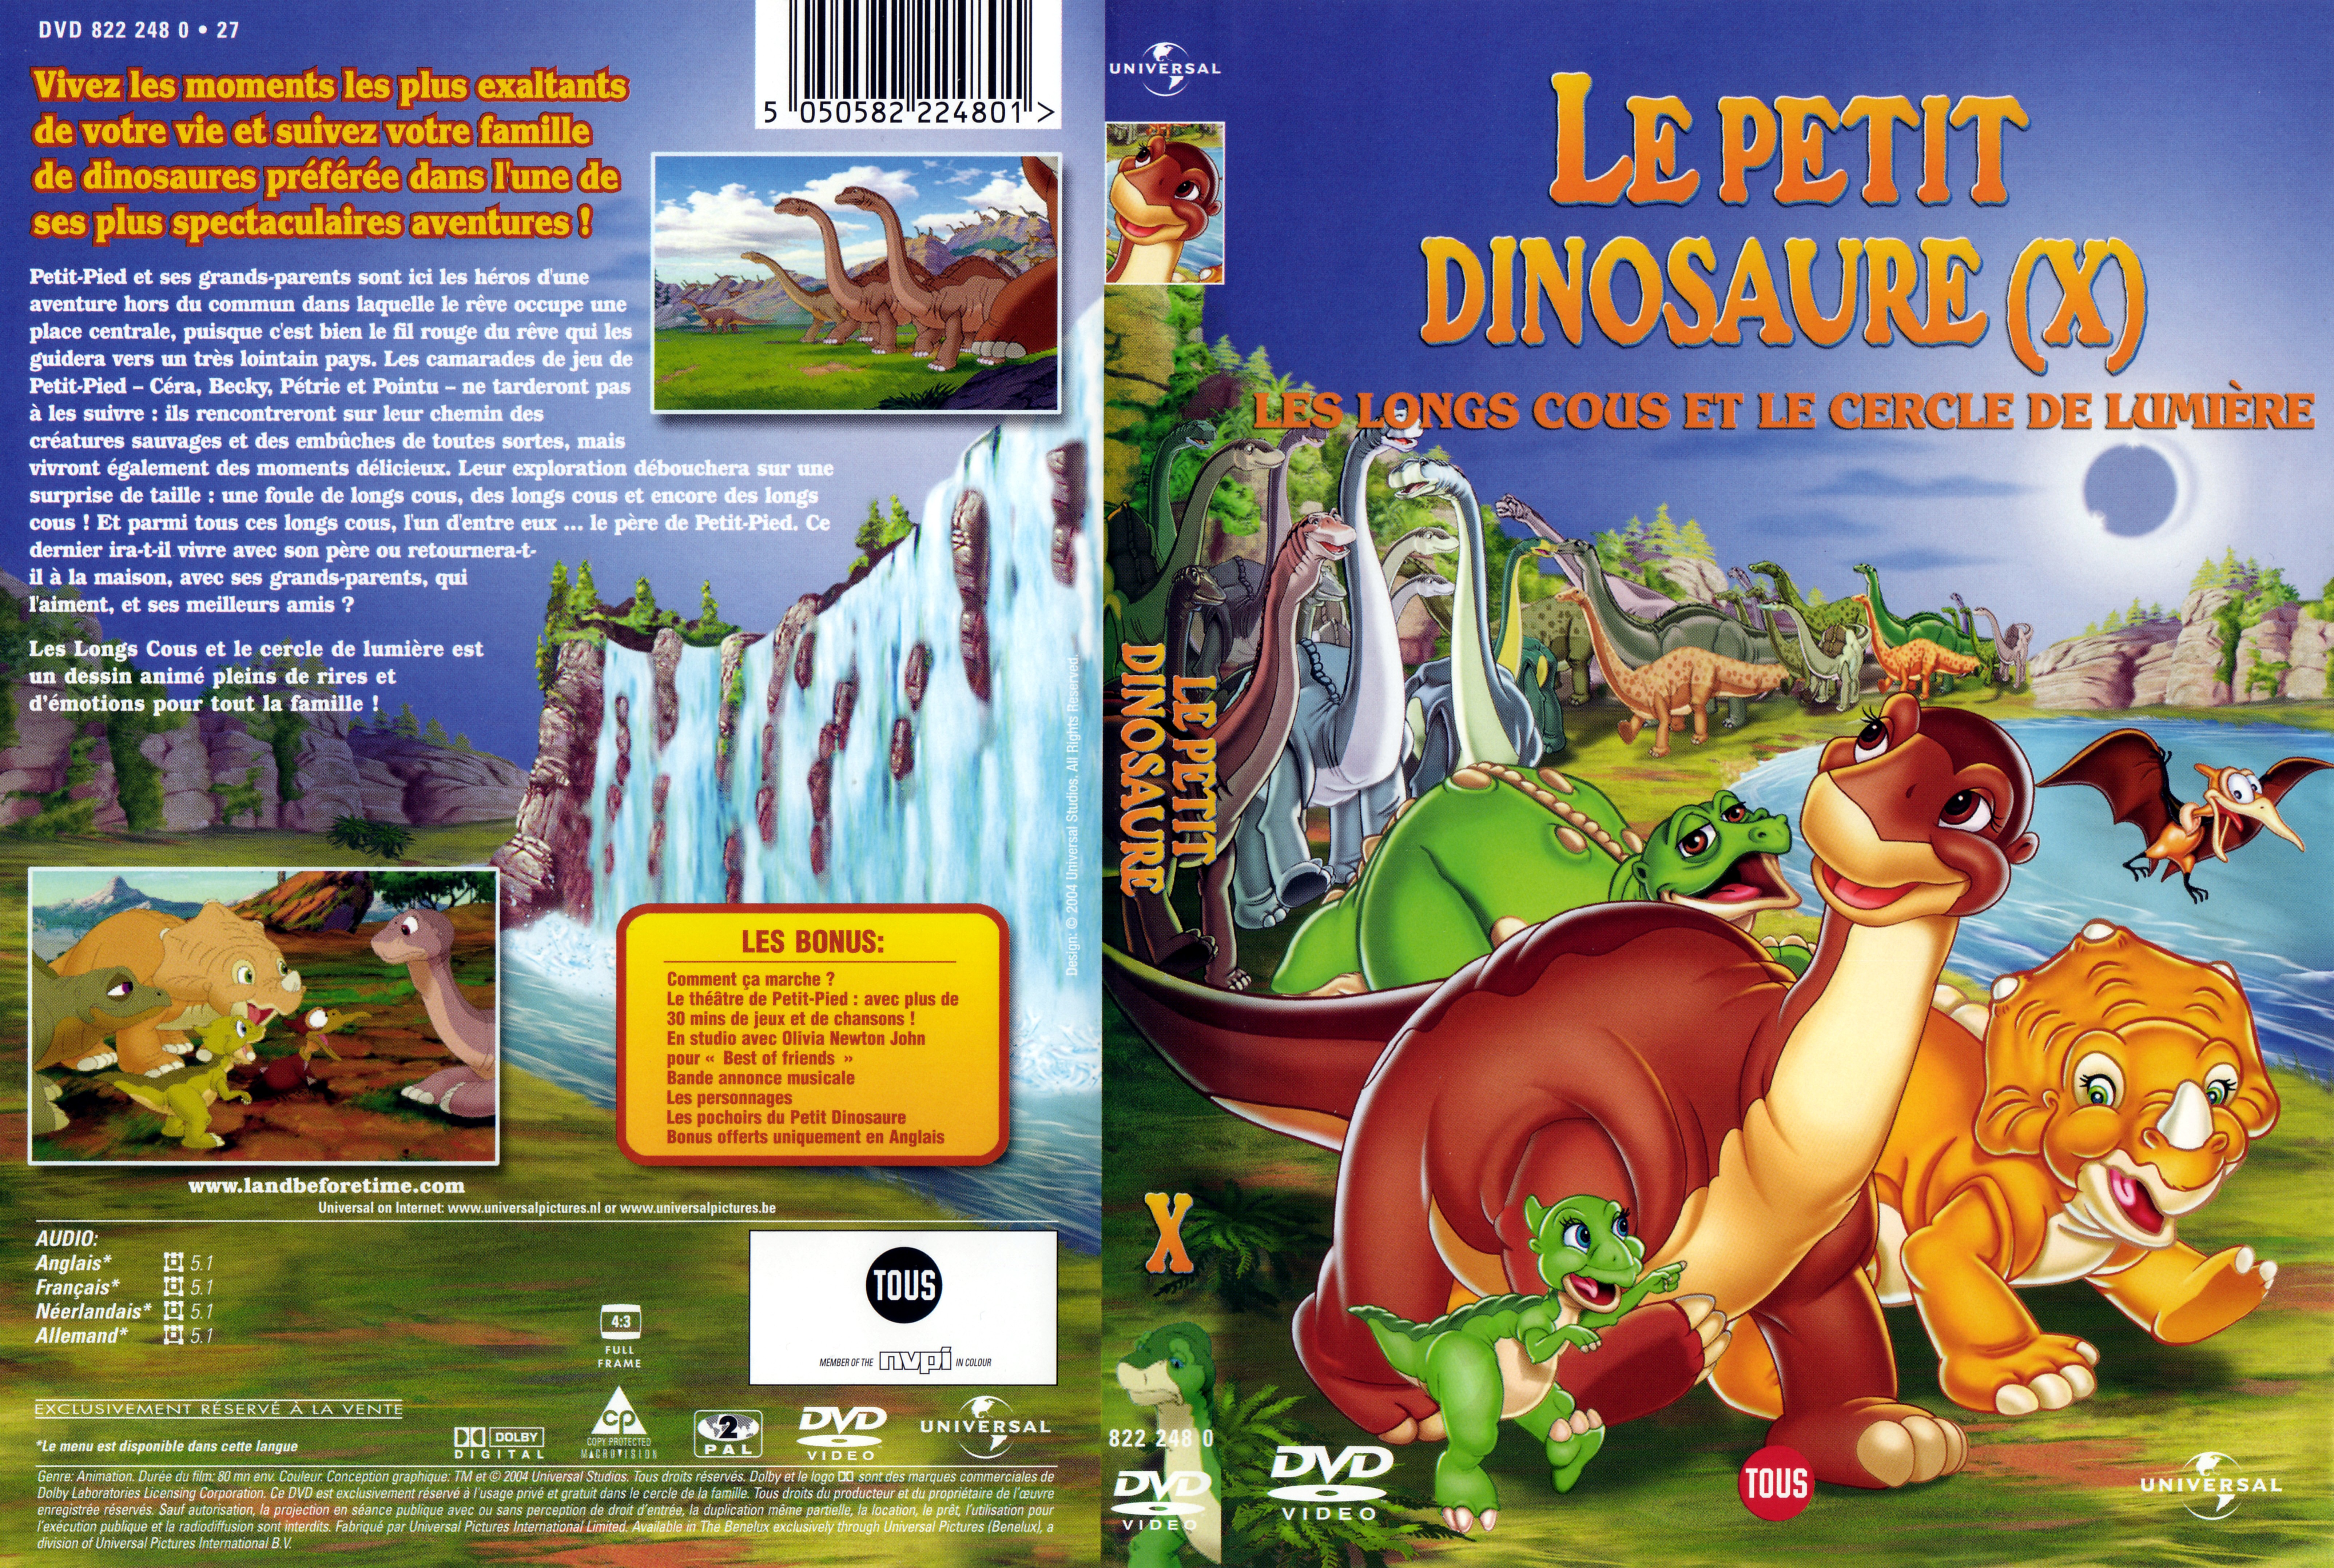 Jaquette DVD Le petit dinosaure vol 10 - les longs cous et le cercle de la lumiere v2